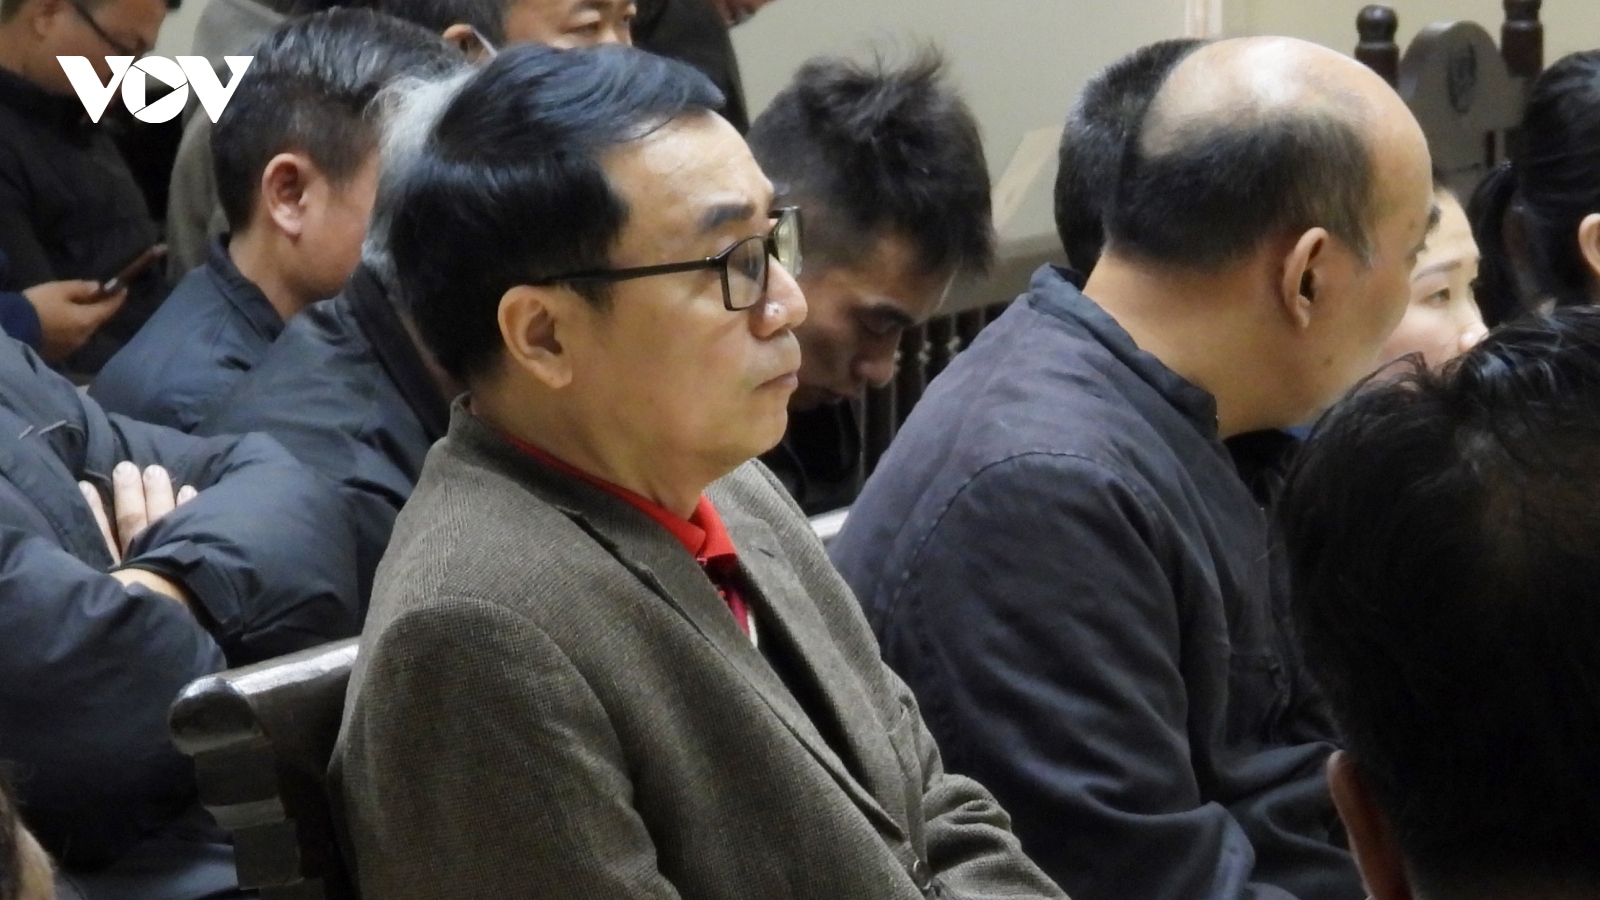 Cựu Cục phó Quản lý thị trường Trần Hùng tiếp tục kêu oan